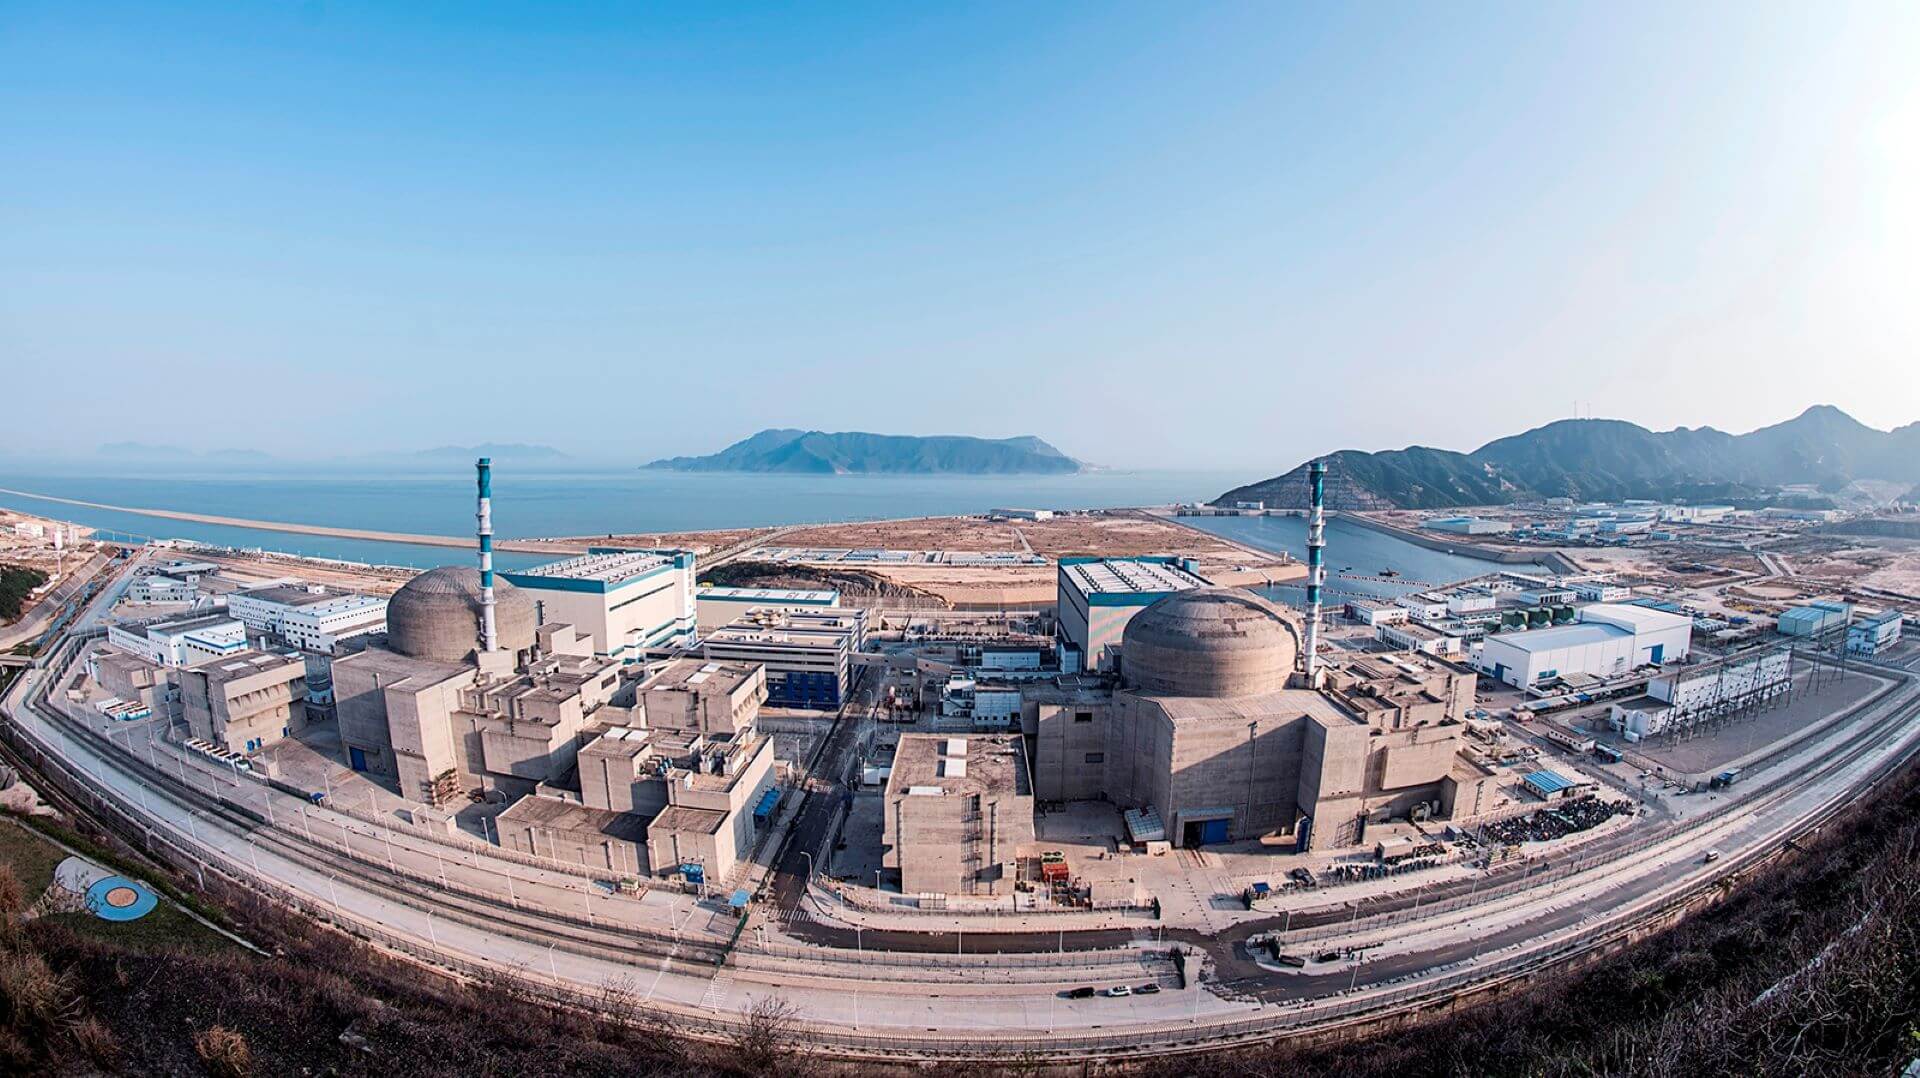 Taishan nuclear power plant, Guangdong, China